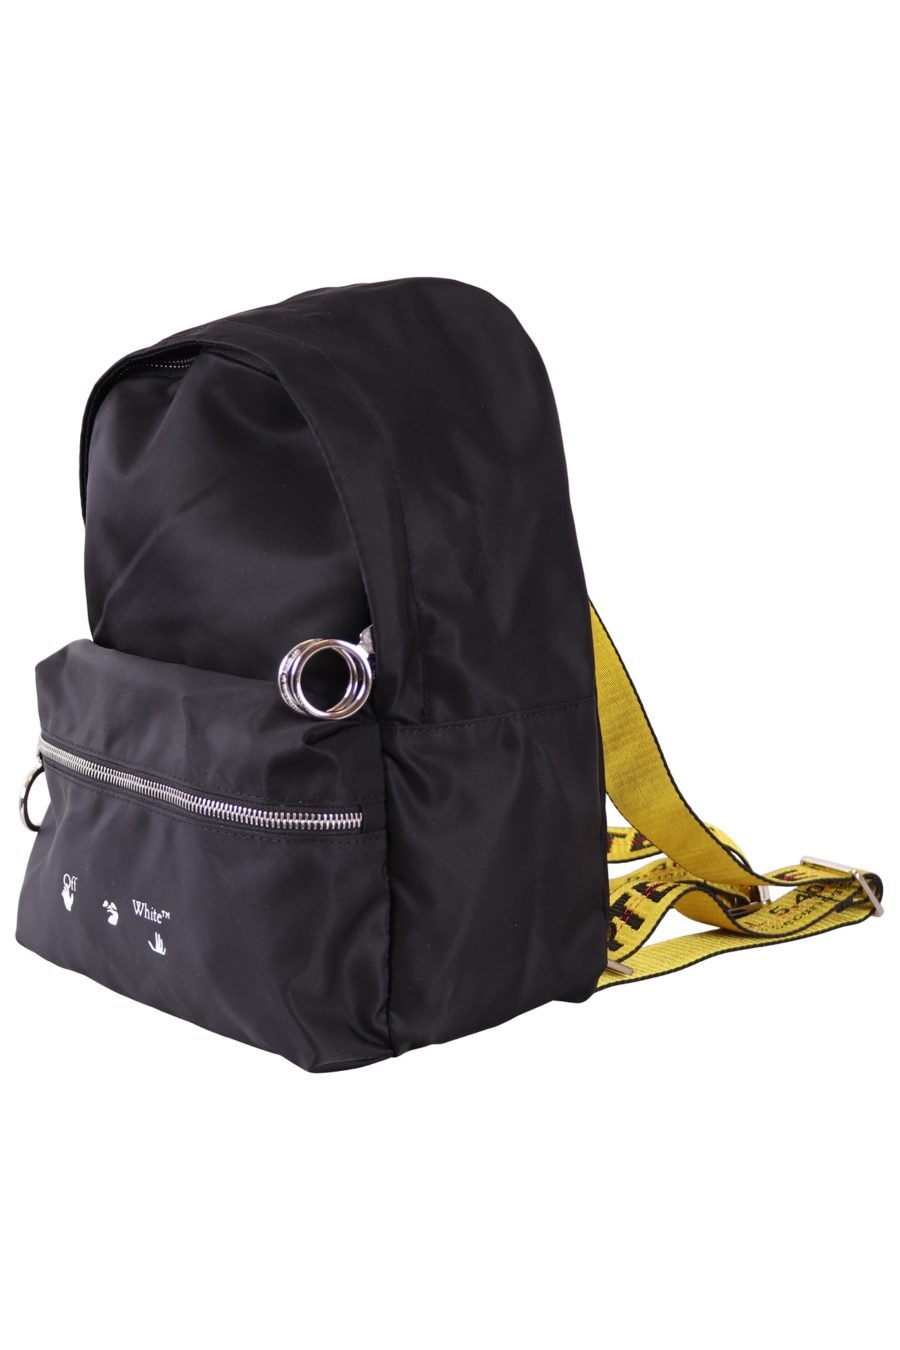 Rucksack Off-White schwarz mit Logo und gelben Trägern - ebb905555ad4a4fcbfead2468649be5d56fb90f432